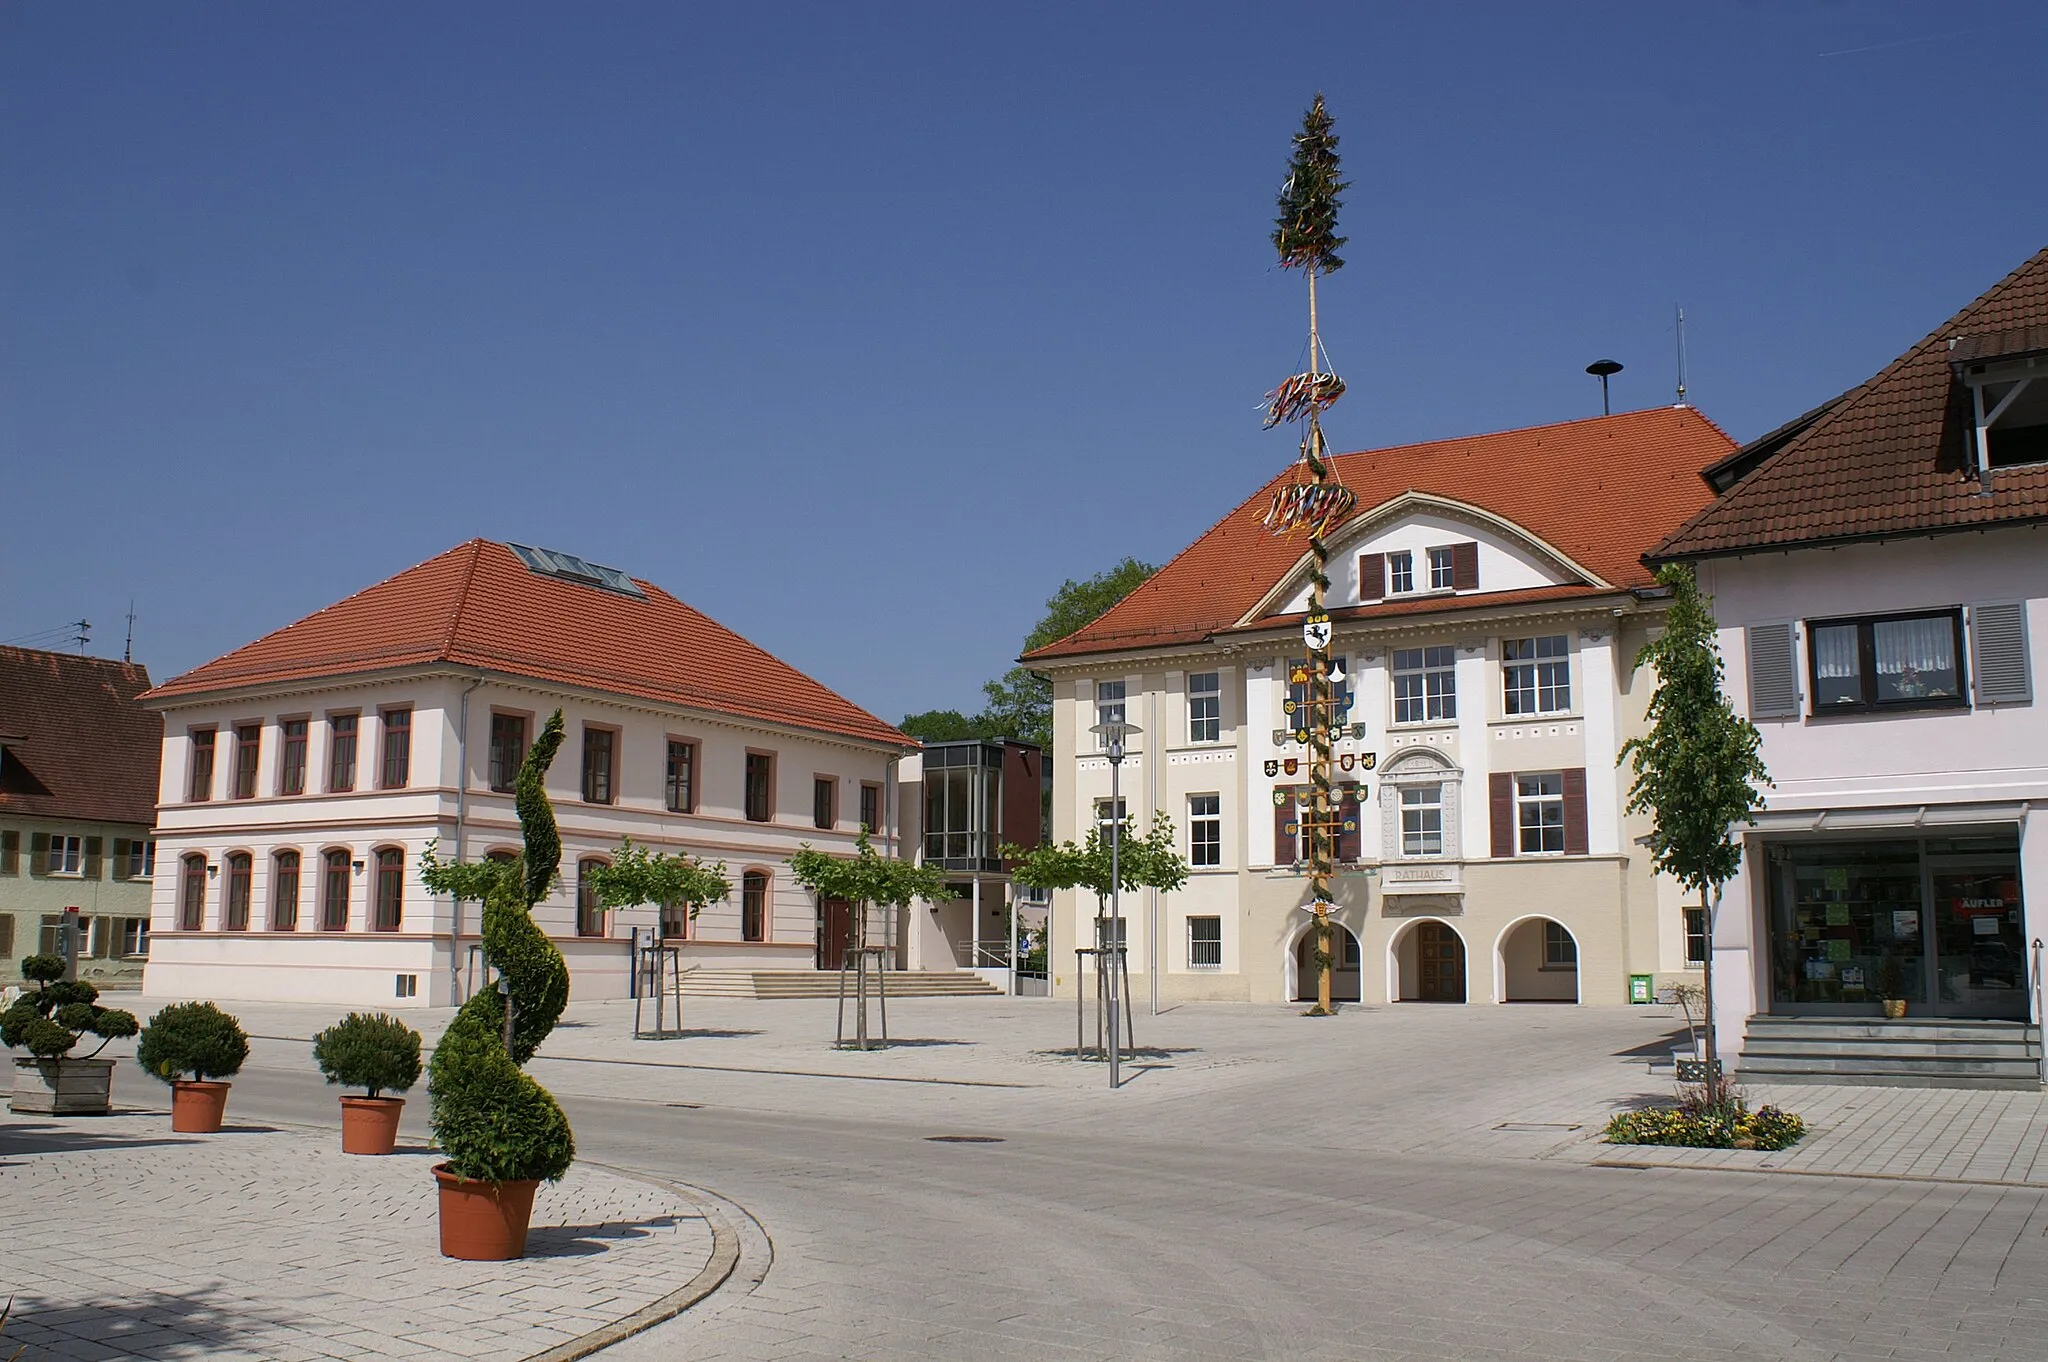 Photo showing: Dorfmitte von Allmendingen im Alb-Donau-Kreis mit Rathaus (Bildmitte) und Bürgerhaus (links)